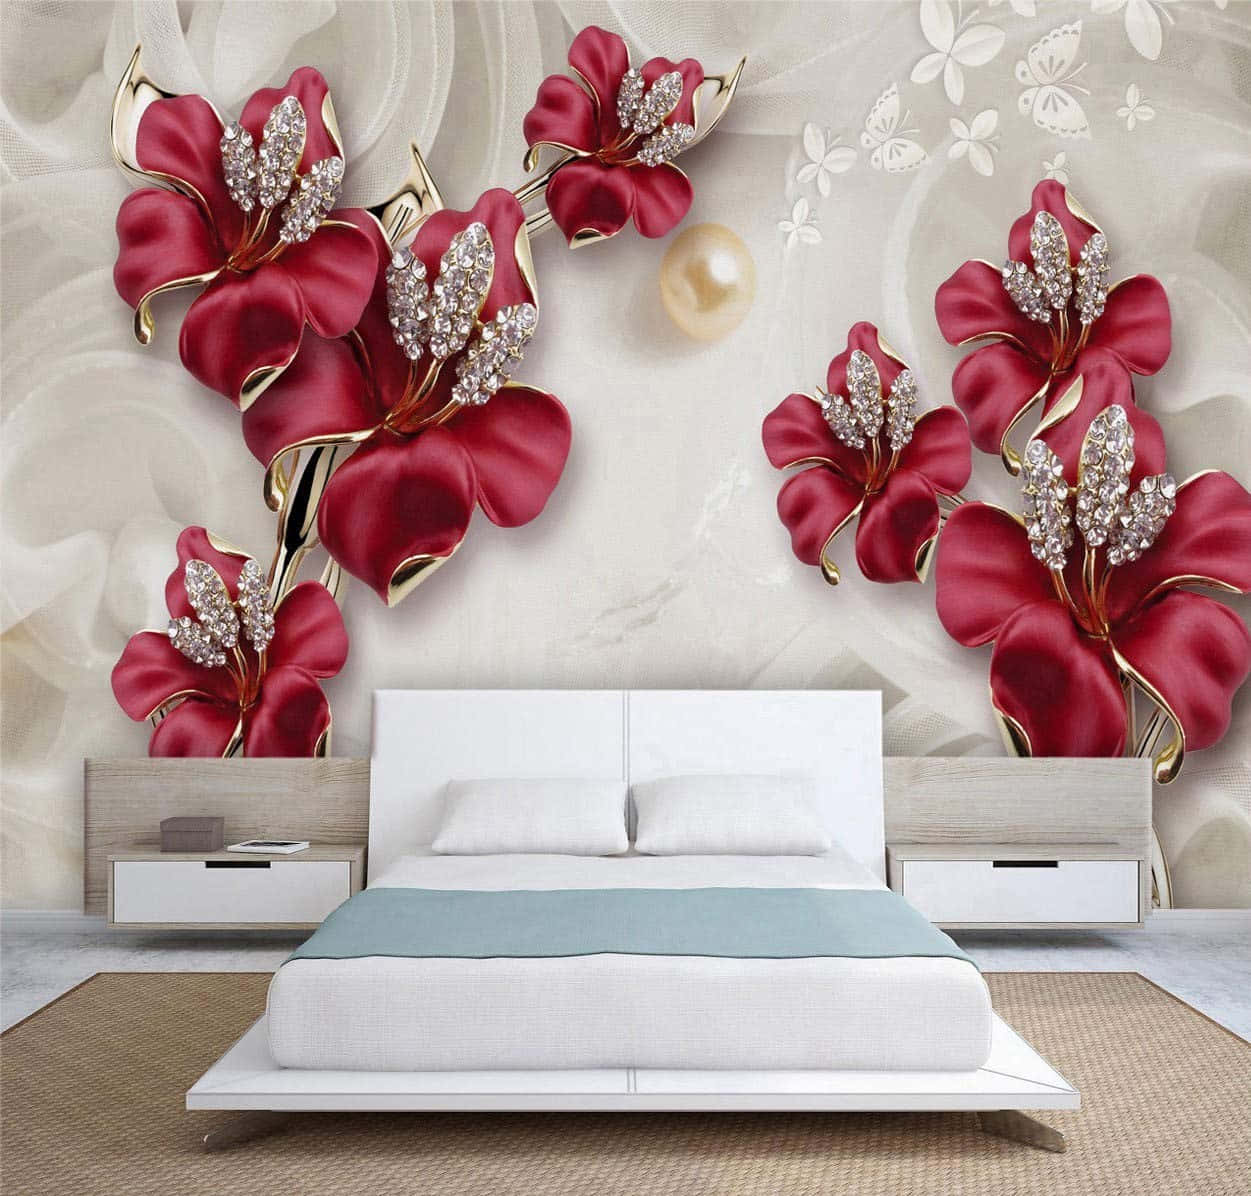 Serenity In Sleep: Elegant White Floating Bed Illuminated Amid Oversized Flowers Background